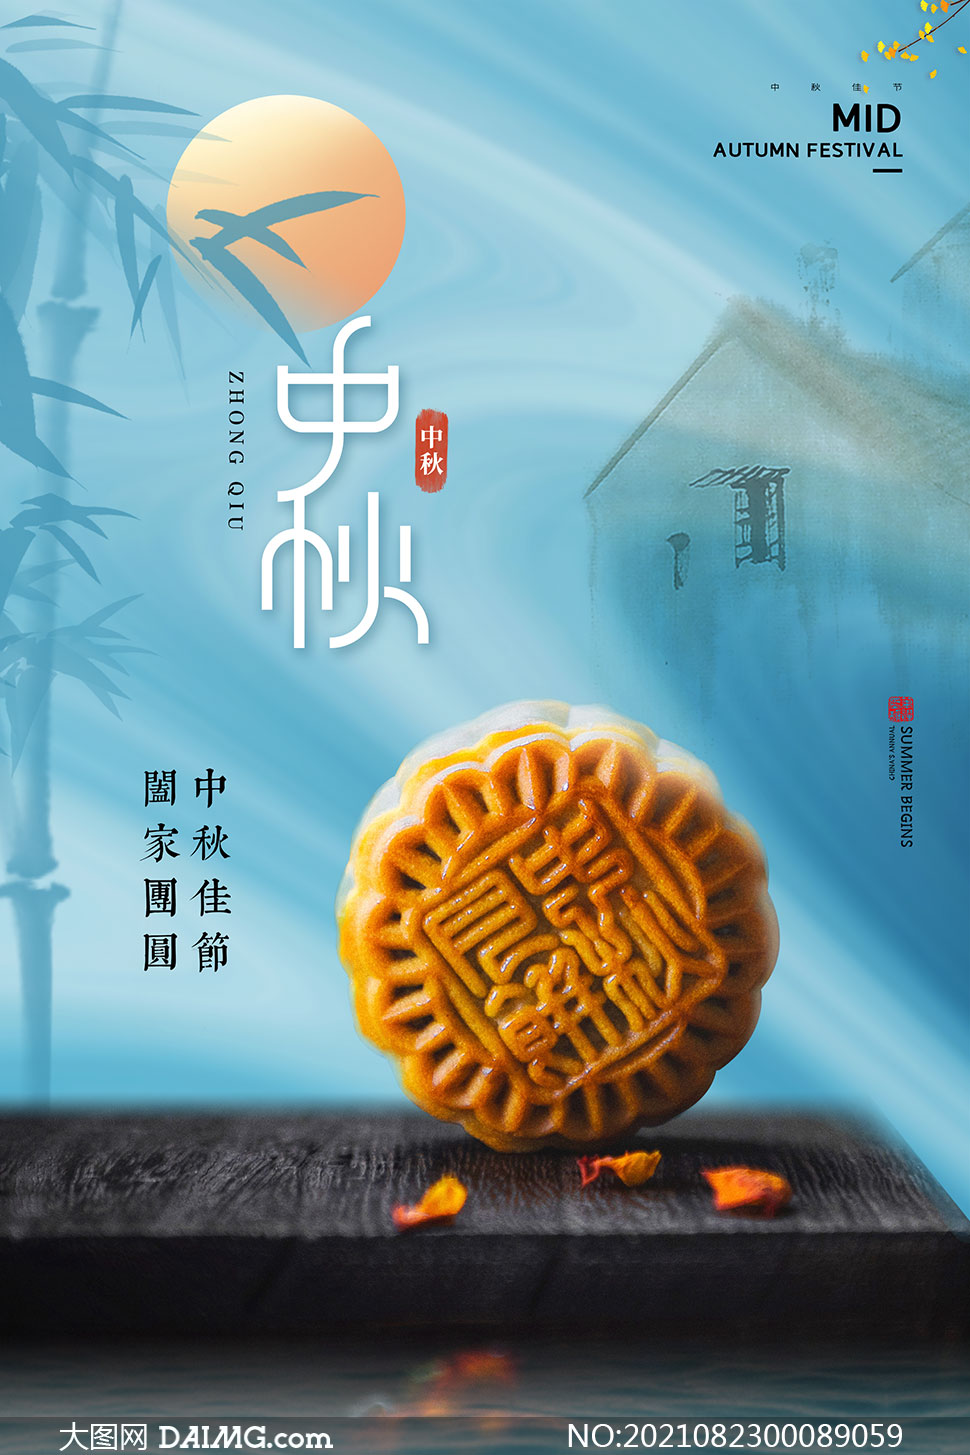 中秋节月饼促销海报设计模板psd源文件